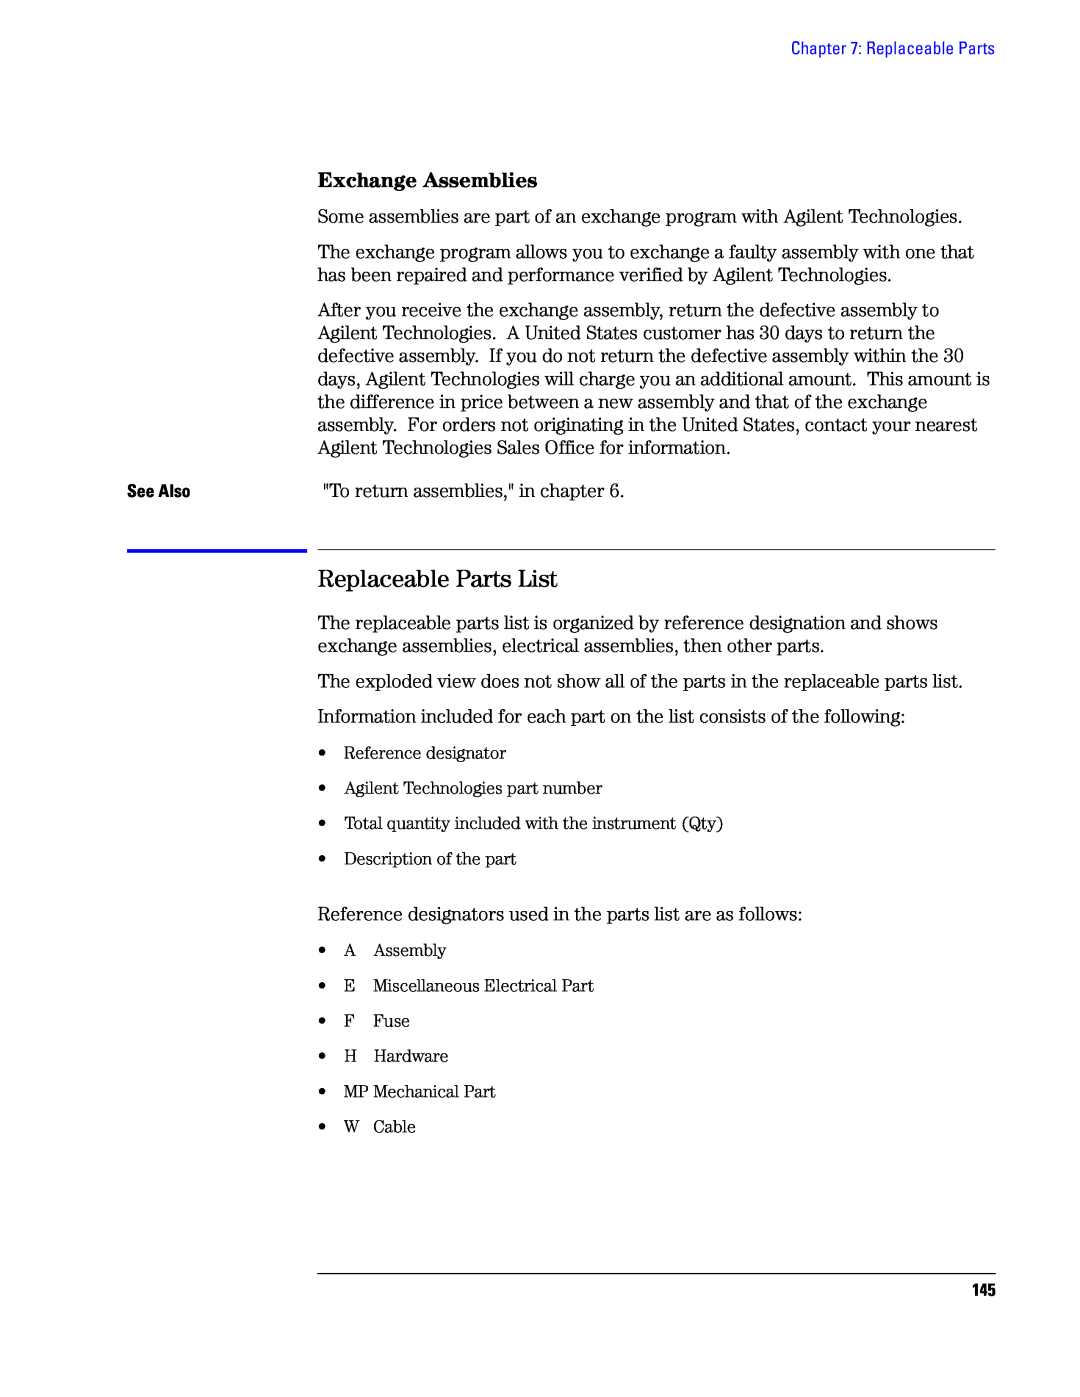 Agilent Technologies 1690, 1680 manual Replaceable Parts List, Exchange Assemblies 